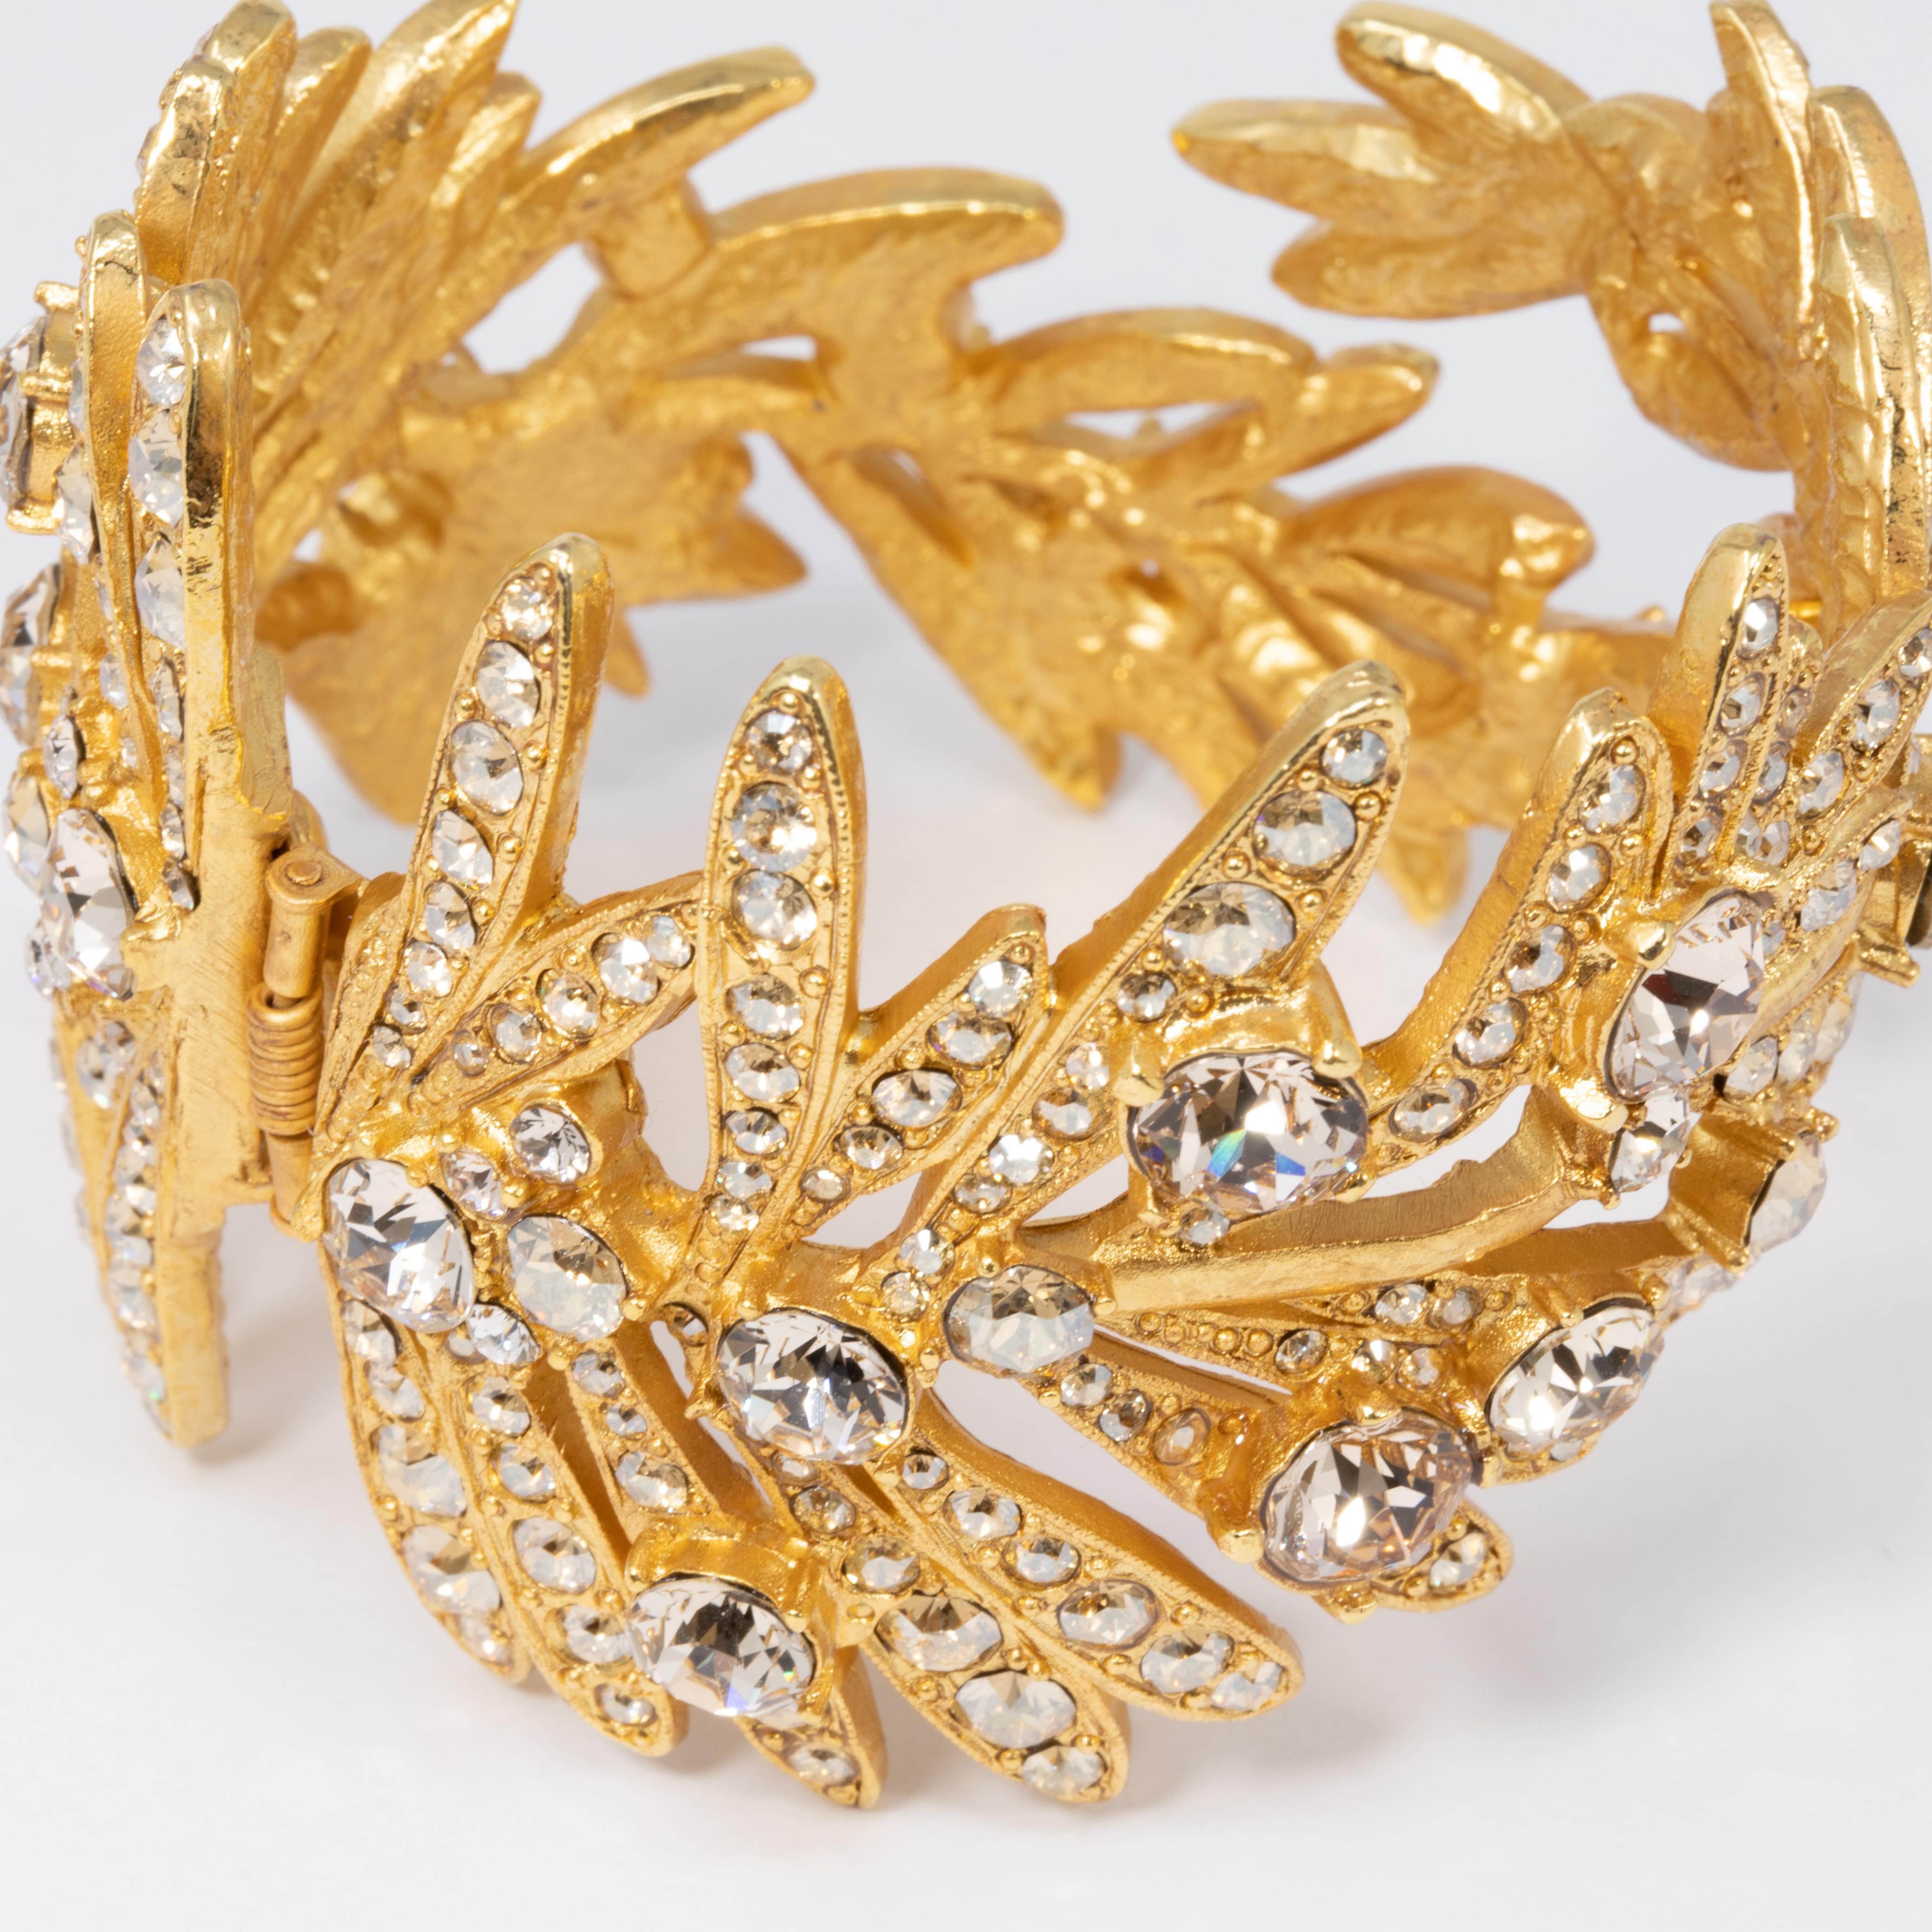 Modern Oscar de la Renta Tropical Leaf Hinged Cuff Bracelet, Clear Crystals, in Gold